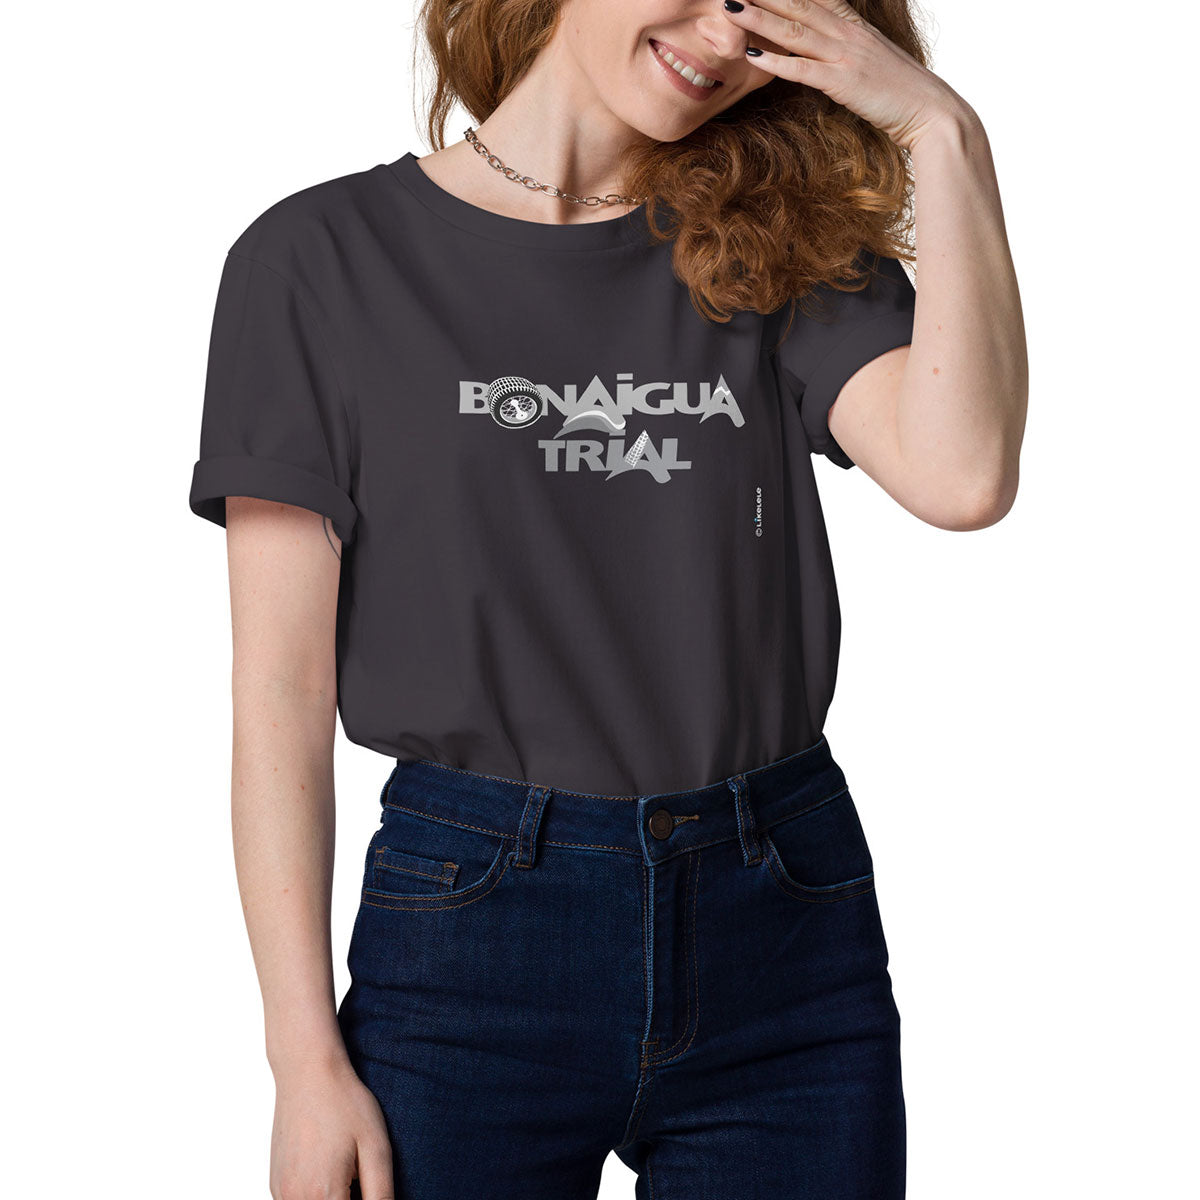 BONAIGUA TRIAL · Camiseta m/corta·Mujer/Unisex · Medium·Anthracite-172c2f